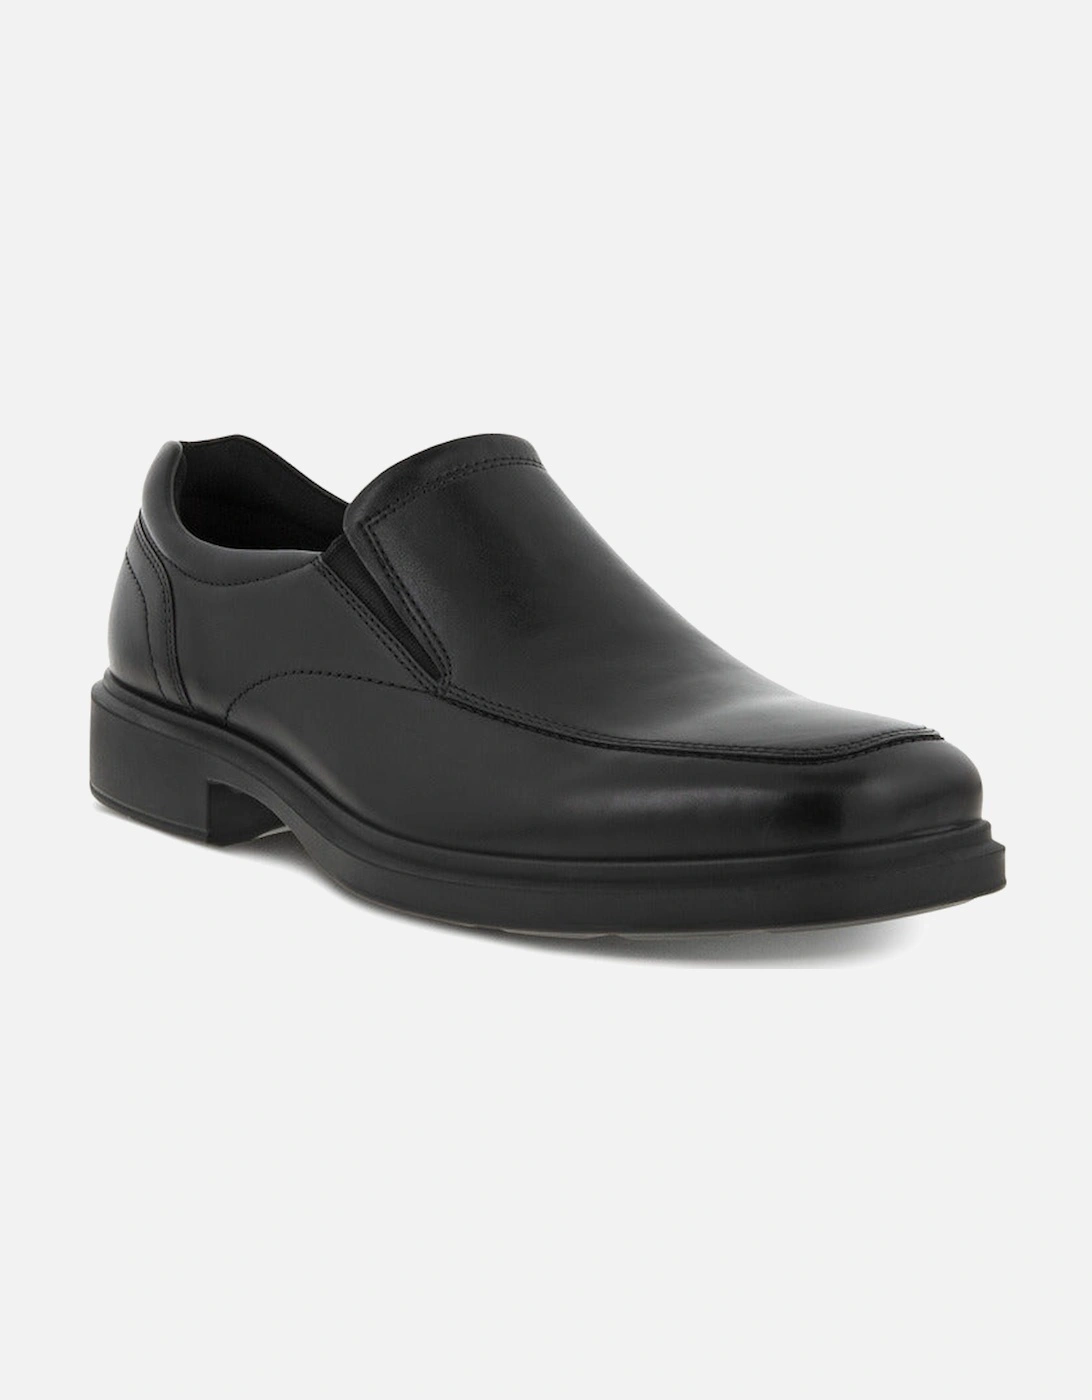 Mens Helsinki 500154-01001 Helsinki mens shoes in Black Leather, 6 of 5